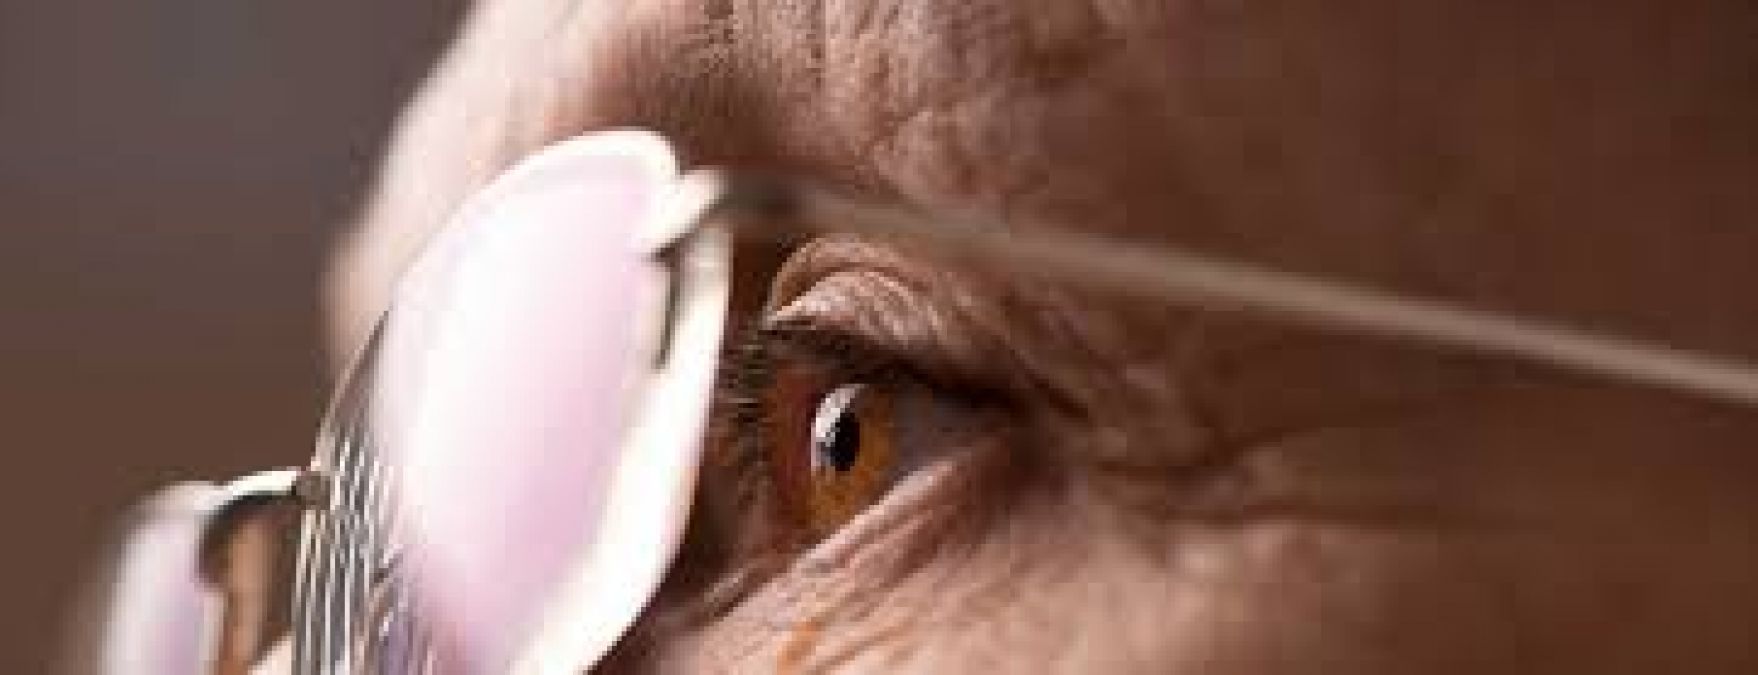 मधुमेह रोगियों की आंखों को धुंधलेपन से बचाने के हैं ये चार उपाय